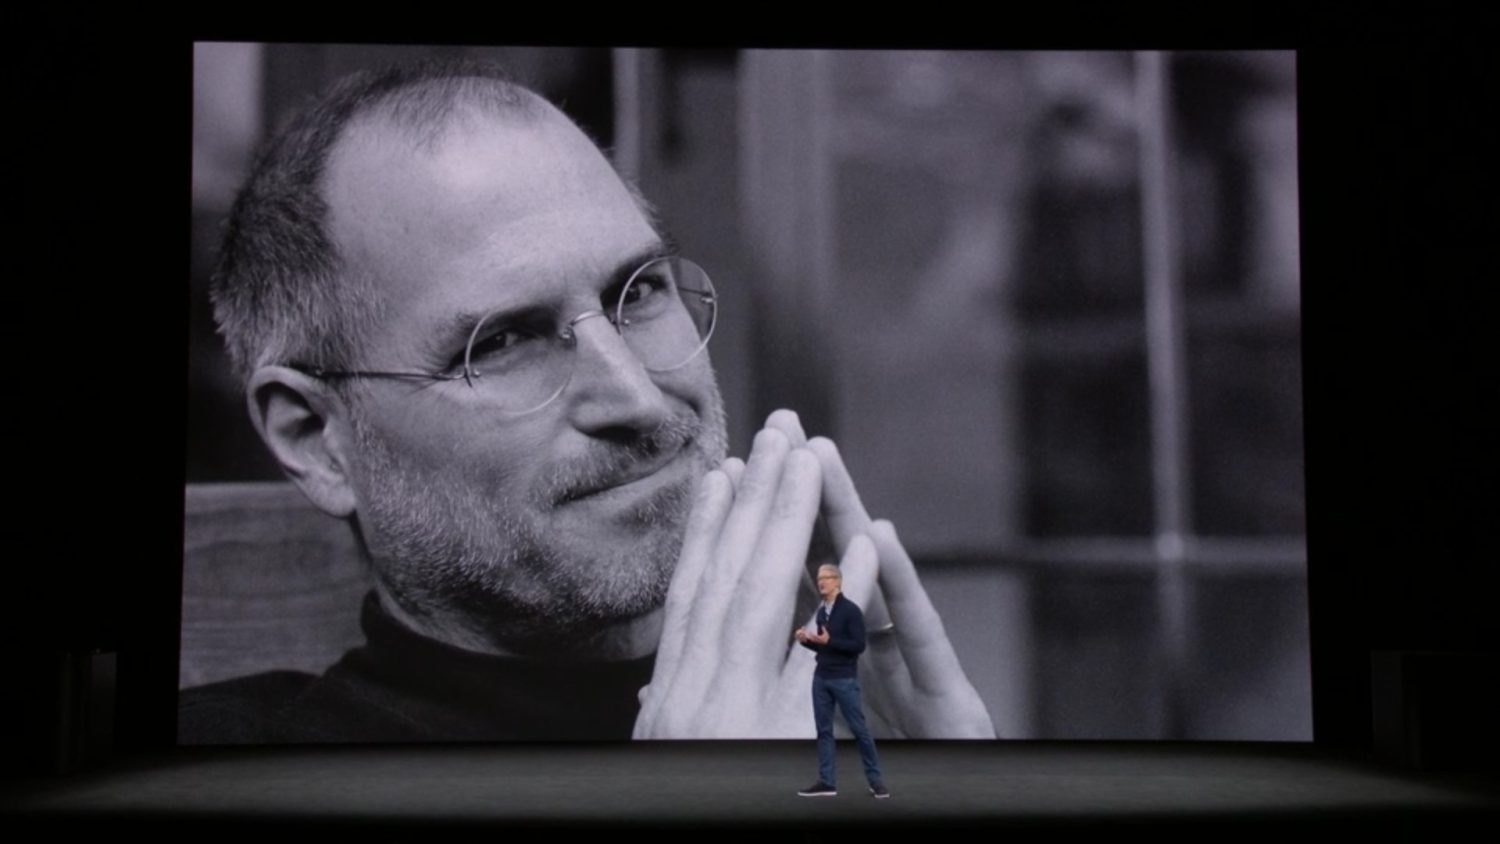 Apple Apple Glass のスティーブ ジョブズモデルが登場する 私設apple委員会